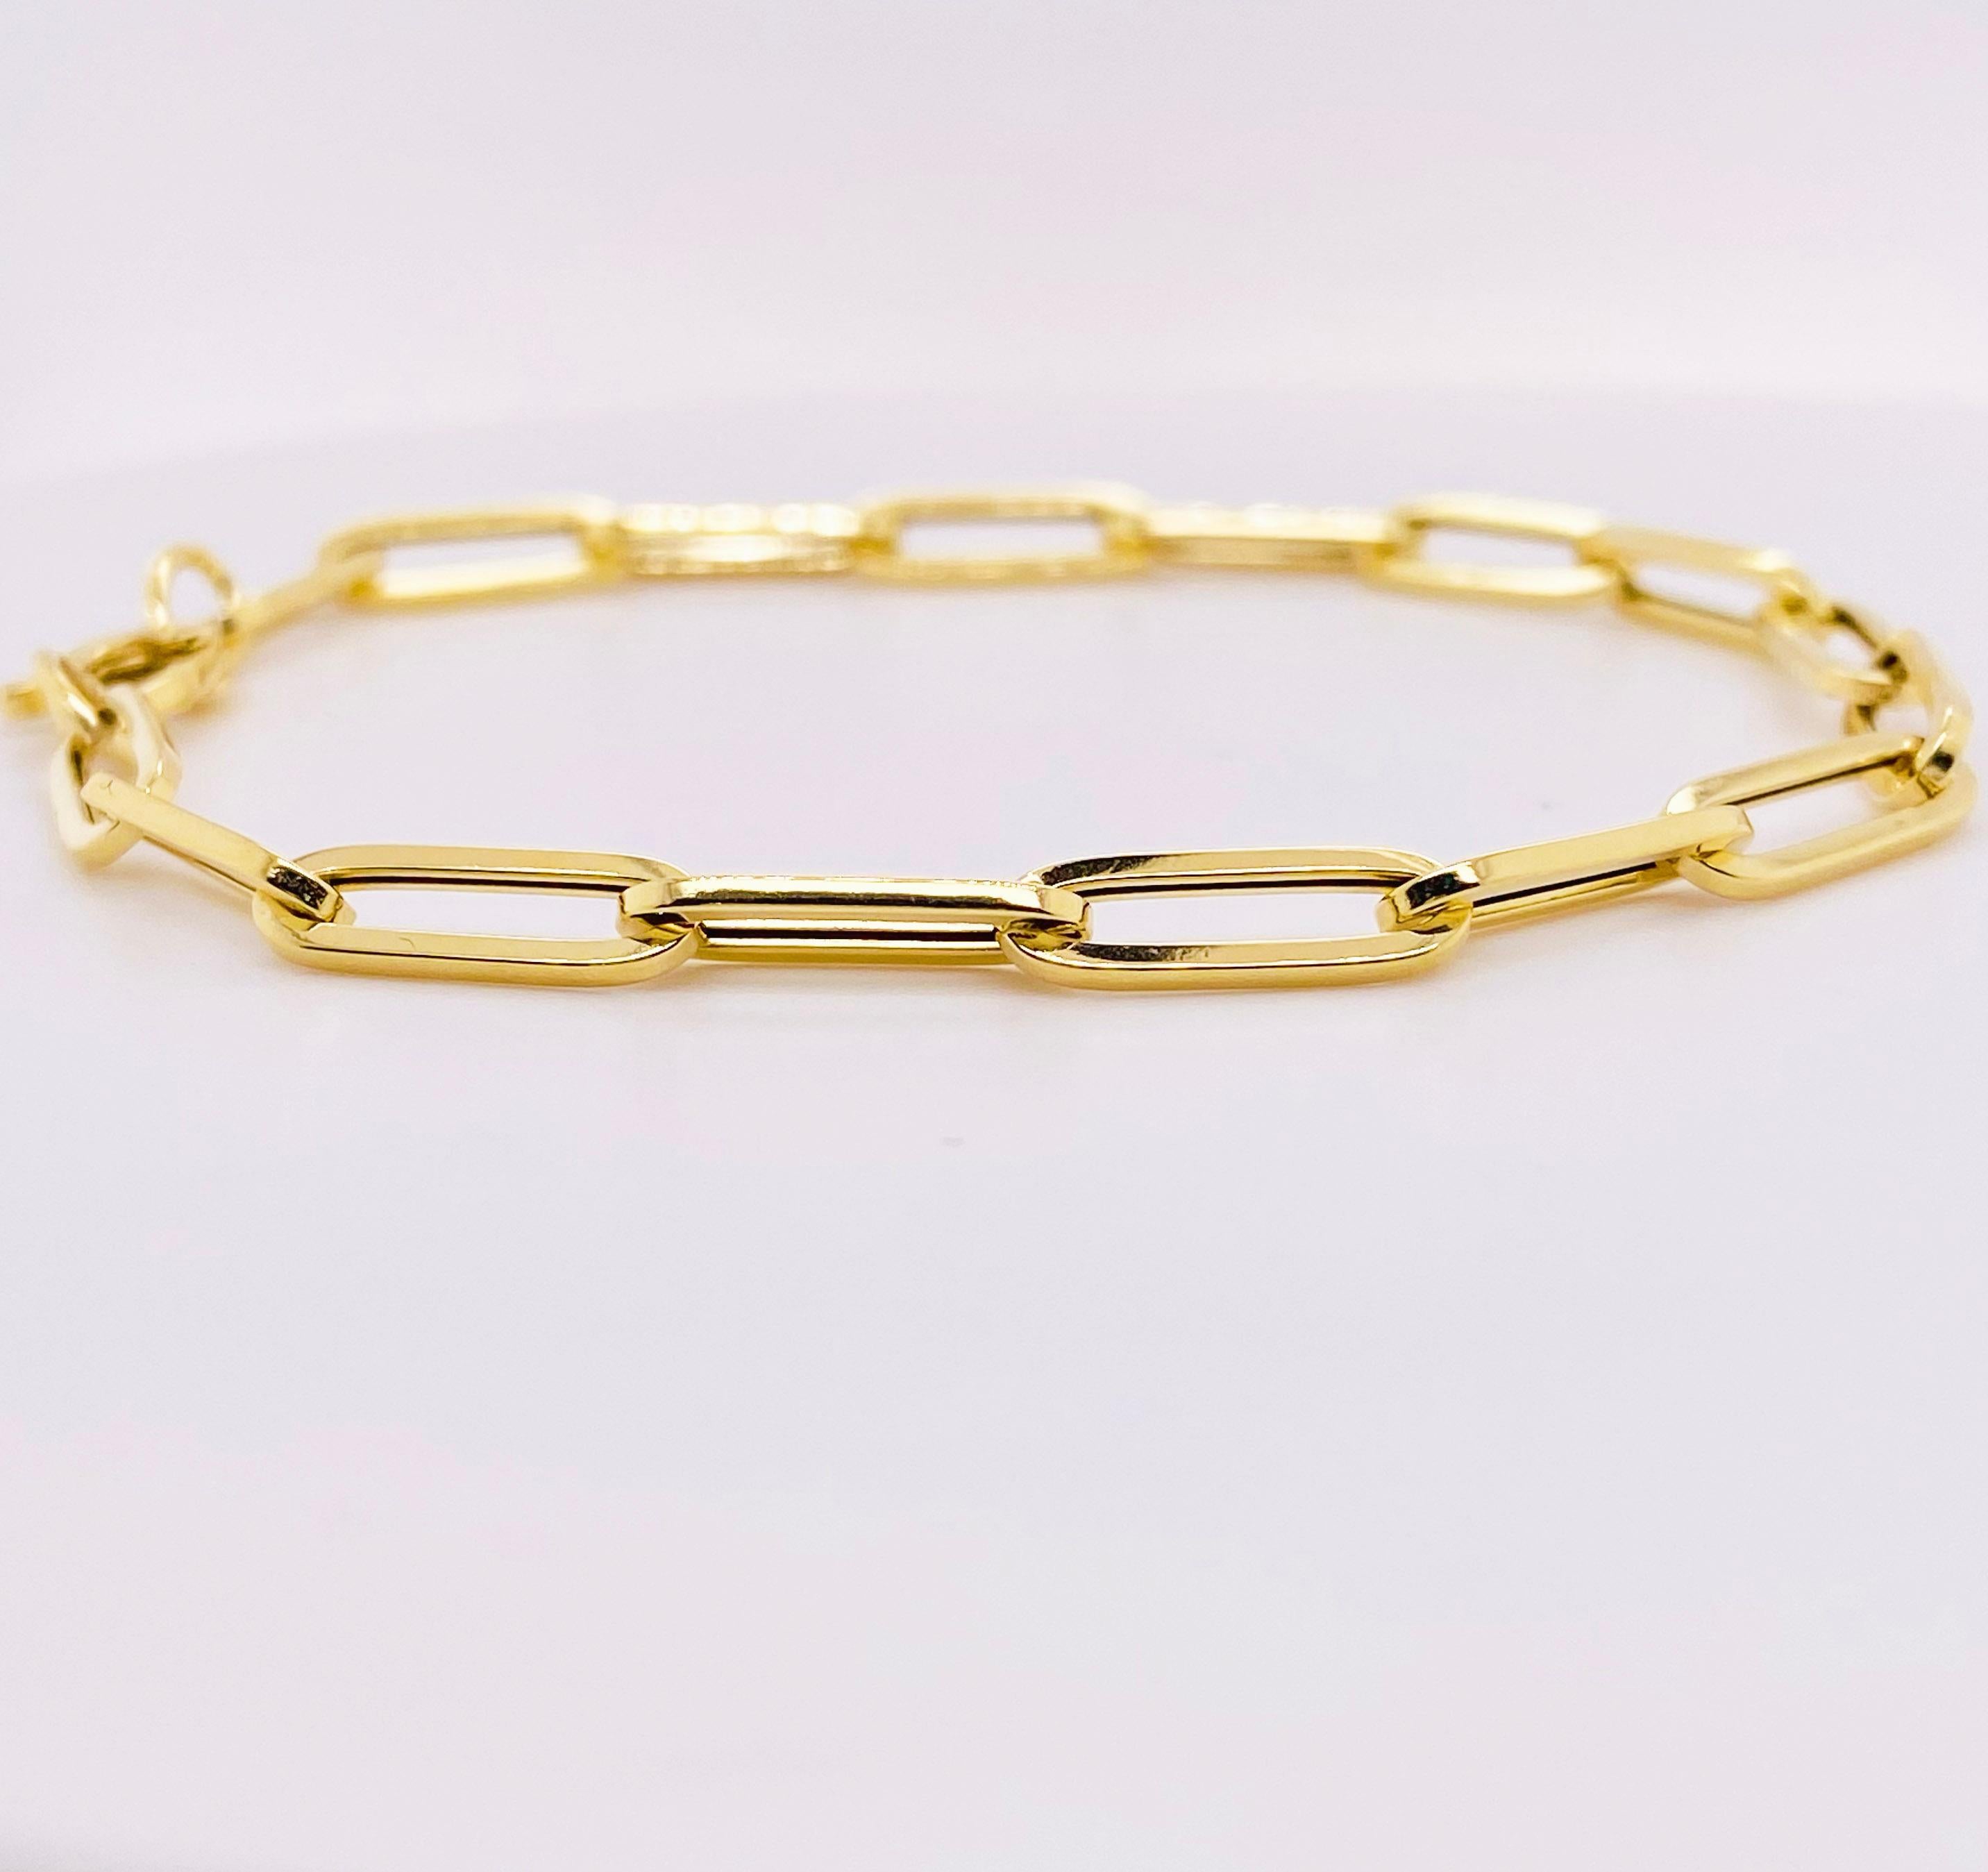 Ce bracelet trombone est le bracelet design le plus populaire de 2021. Le bracelet mesure 4,4 millimètres de large et 7,5 pouces de long. Il est parfait pour le poignet d'une femme de taille moyenne ou d'un homme de petite taille.  La richesse de